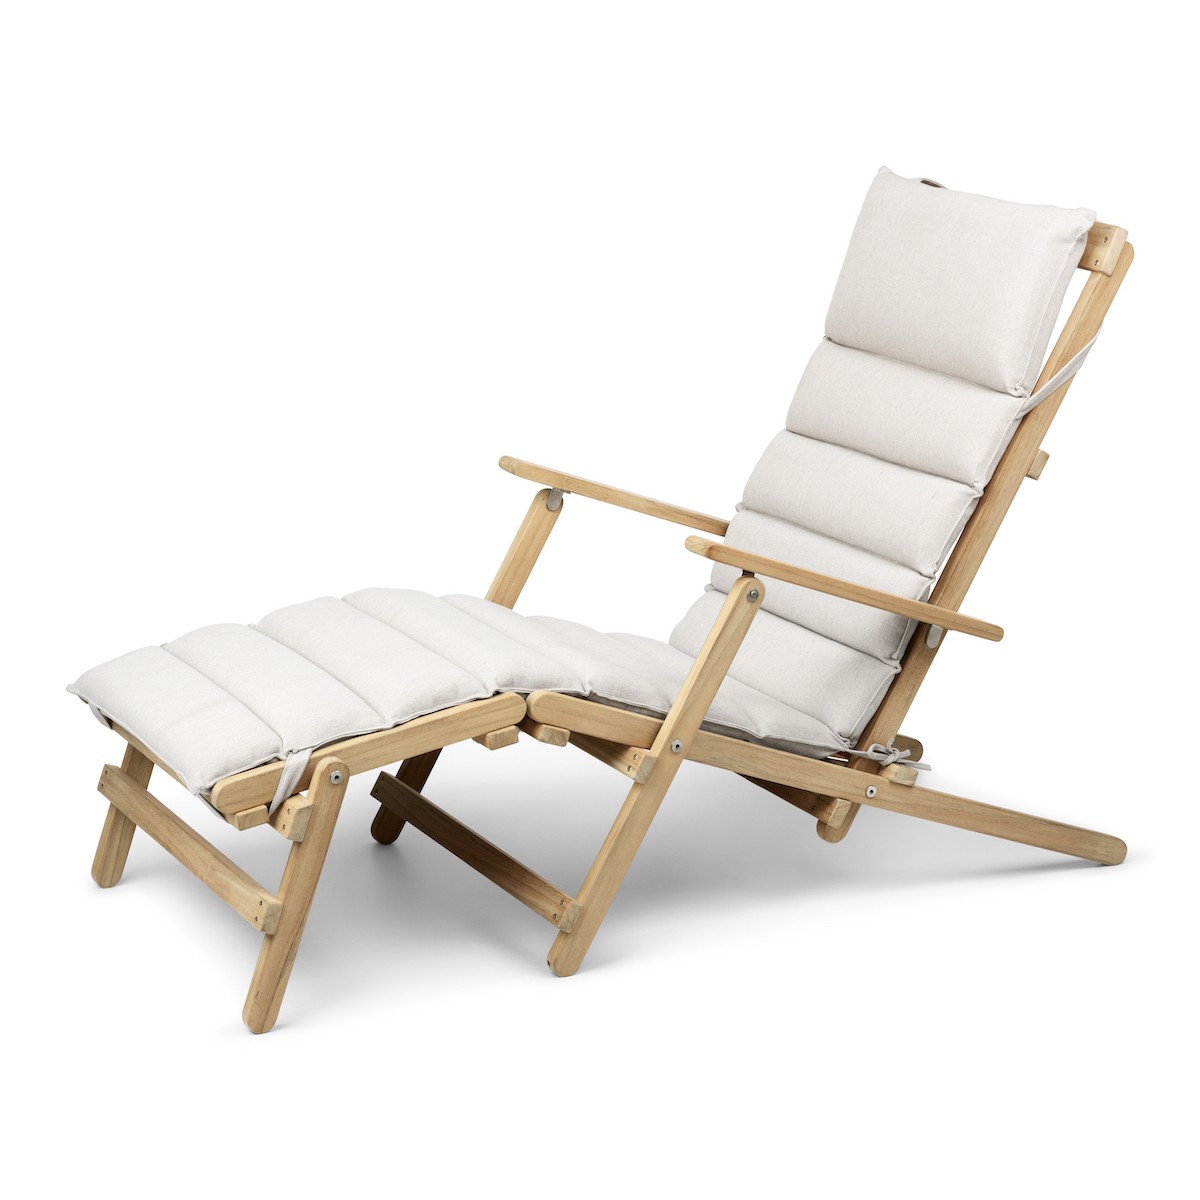 Cushion for Deck chair BM5565